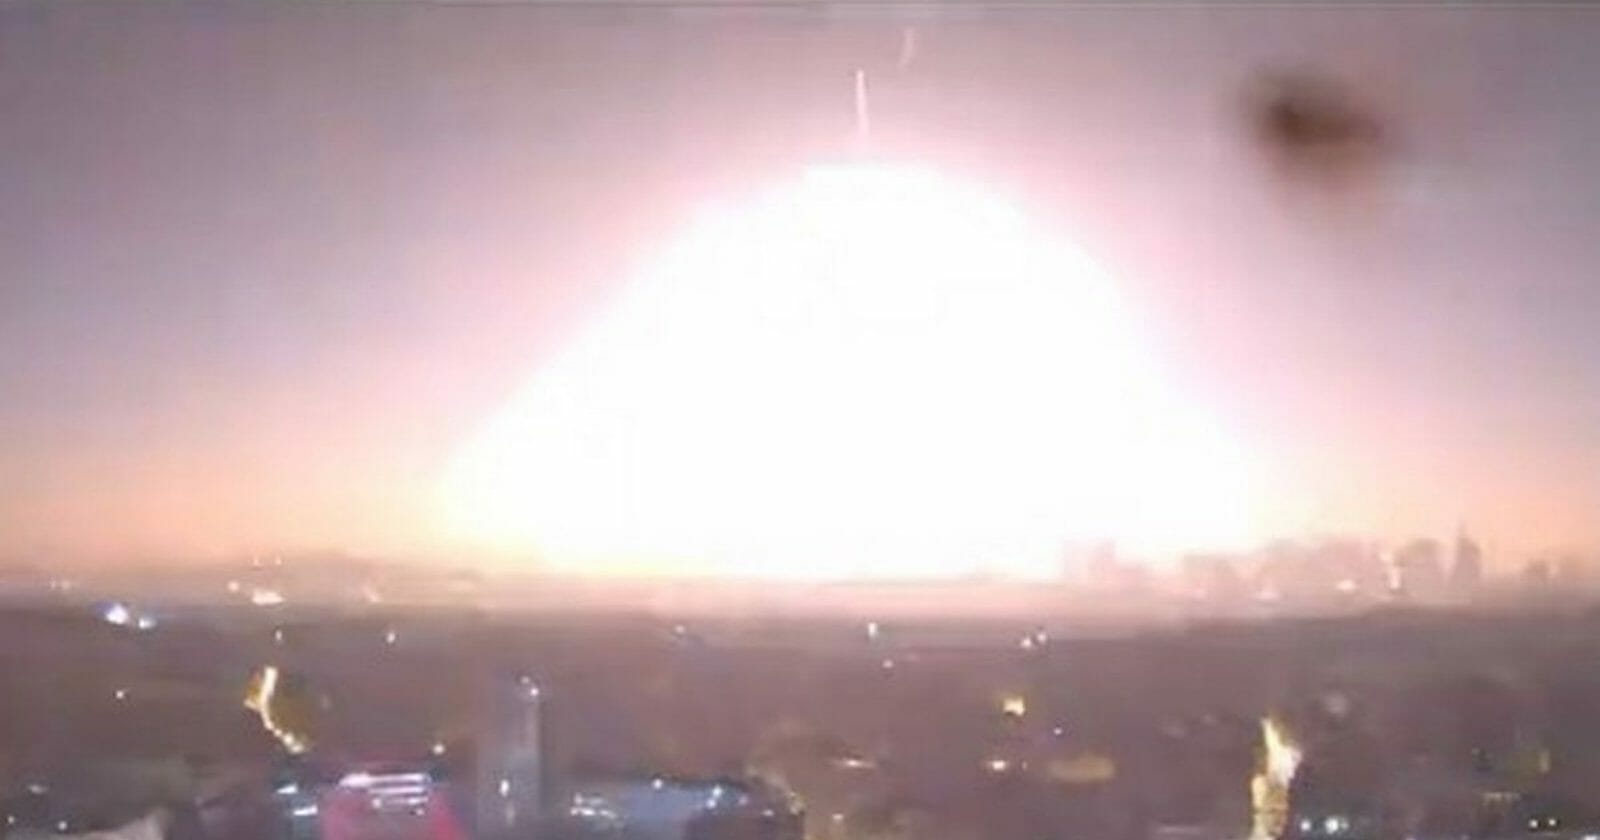 لحظة انفجار كويكب فوق القنال الإنجليزي قبل ارتطامه بالأرض watanserb.com